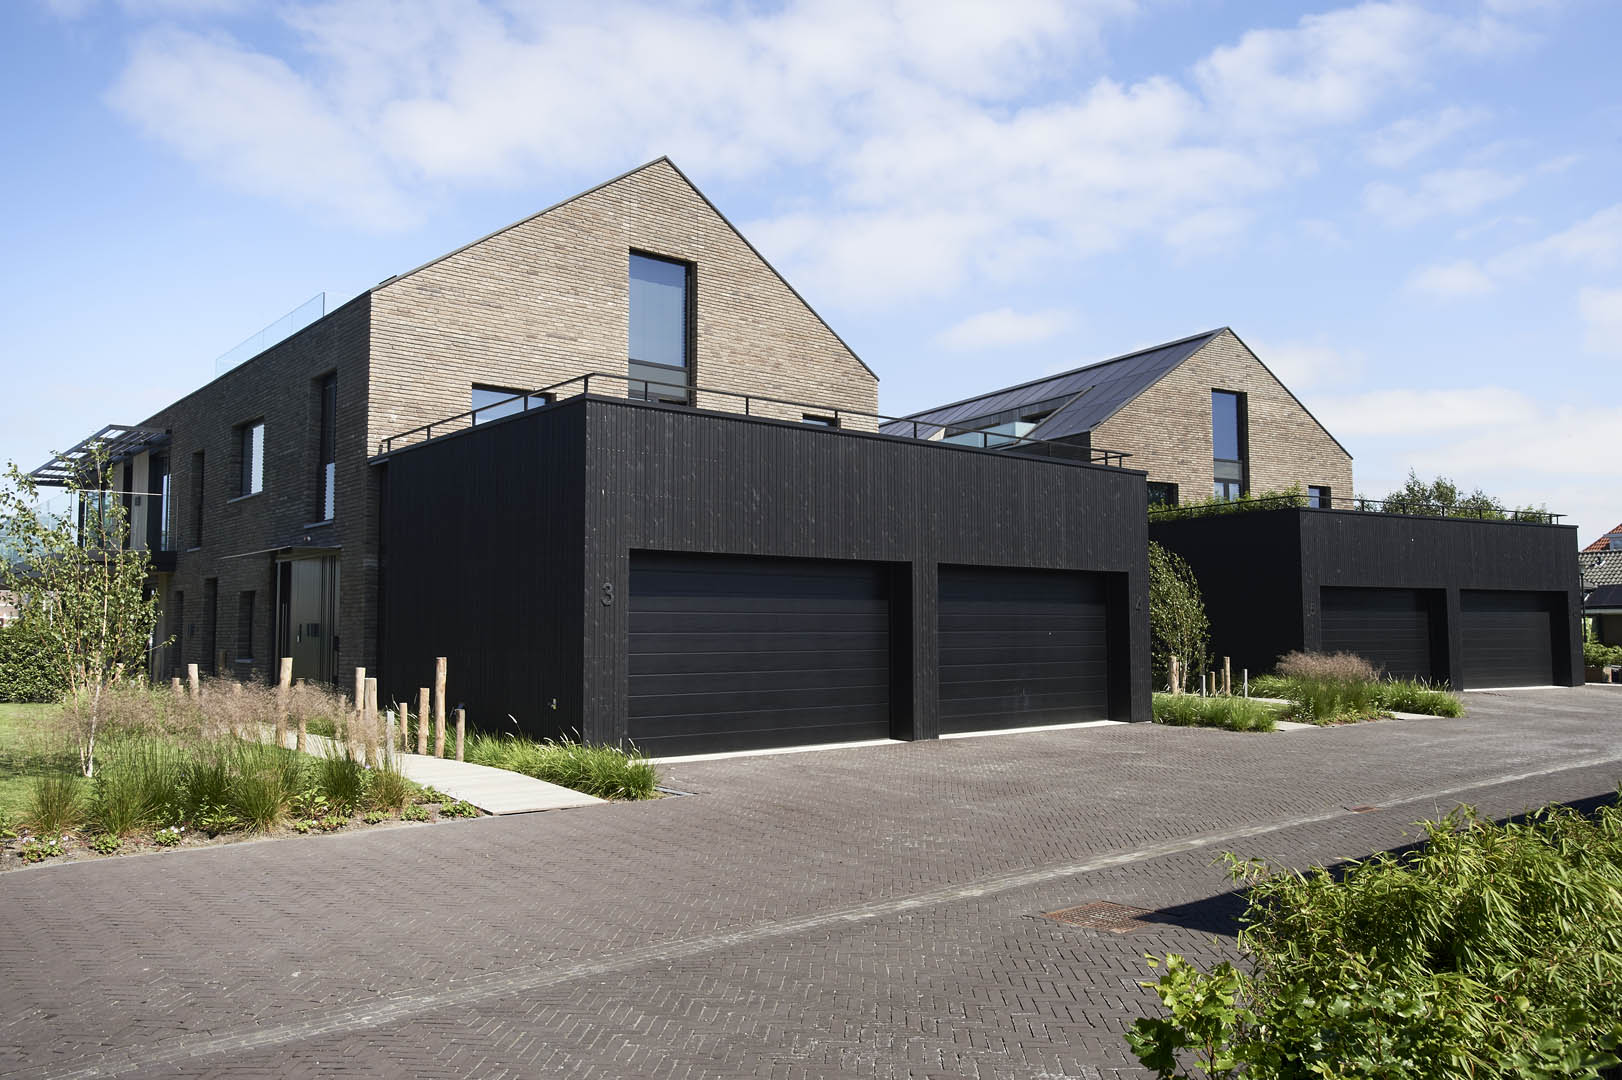 ENZO architectuur N interieur - Haarlemmermeer - Silo - Burgerveen - nieuwbouw - zakelijk - Aalsmeer - penthouses - Nordiawerf